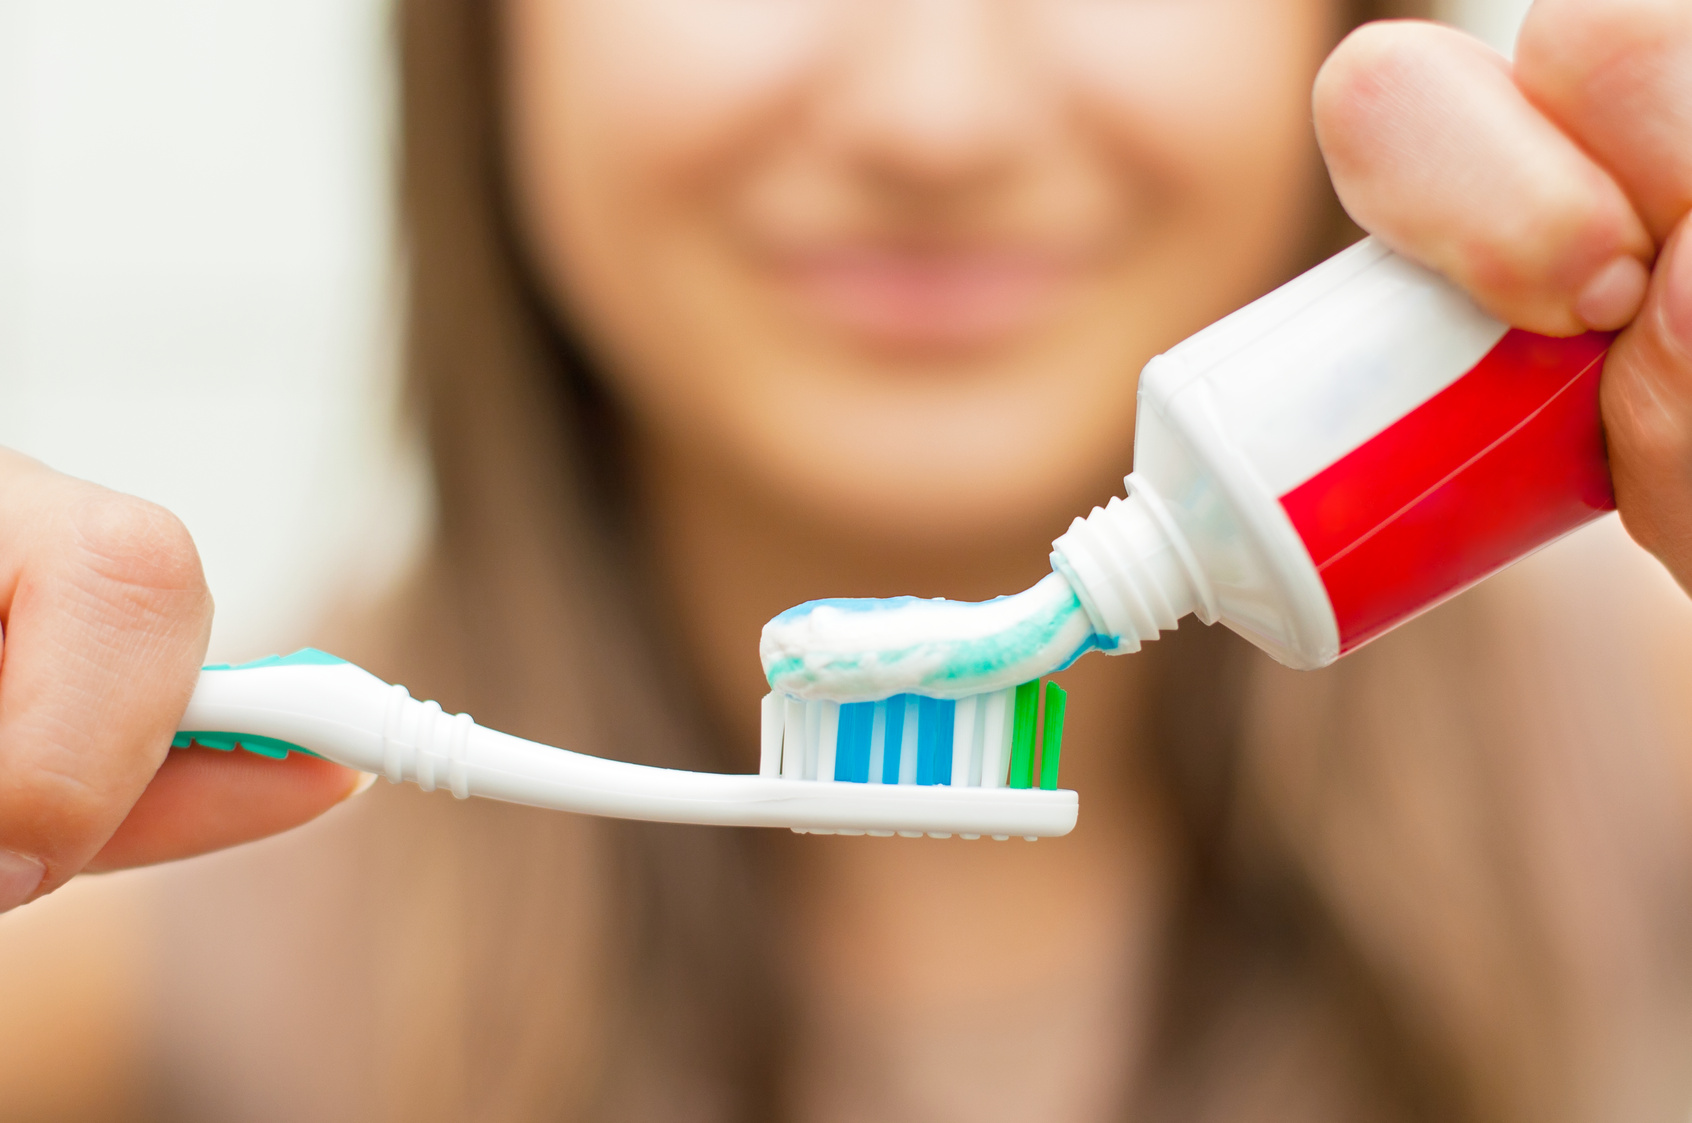 Картинка по теме: Кто знает, как выбрать зубную пасту правильно?